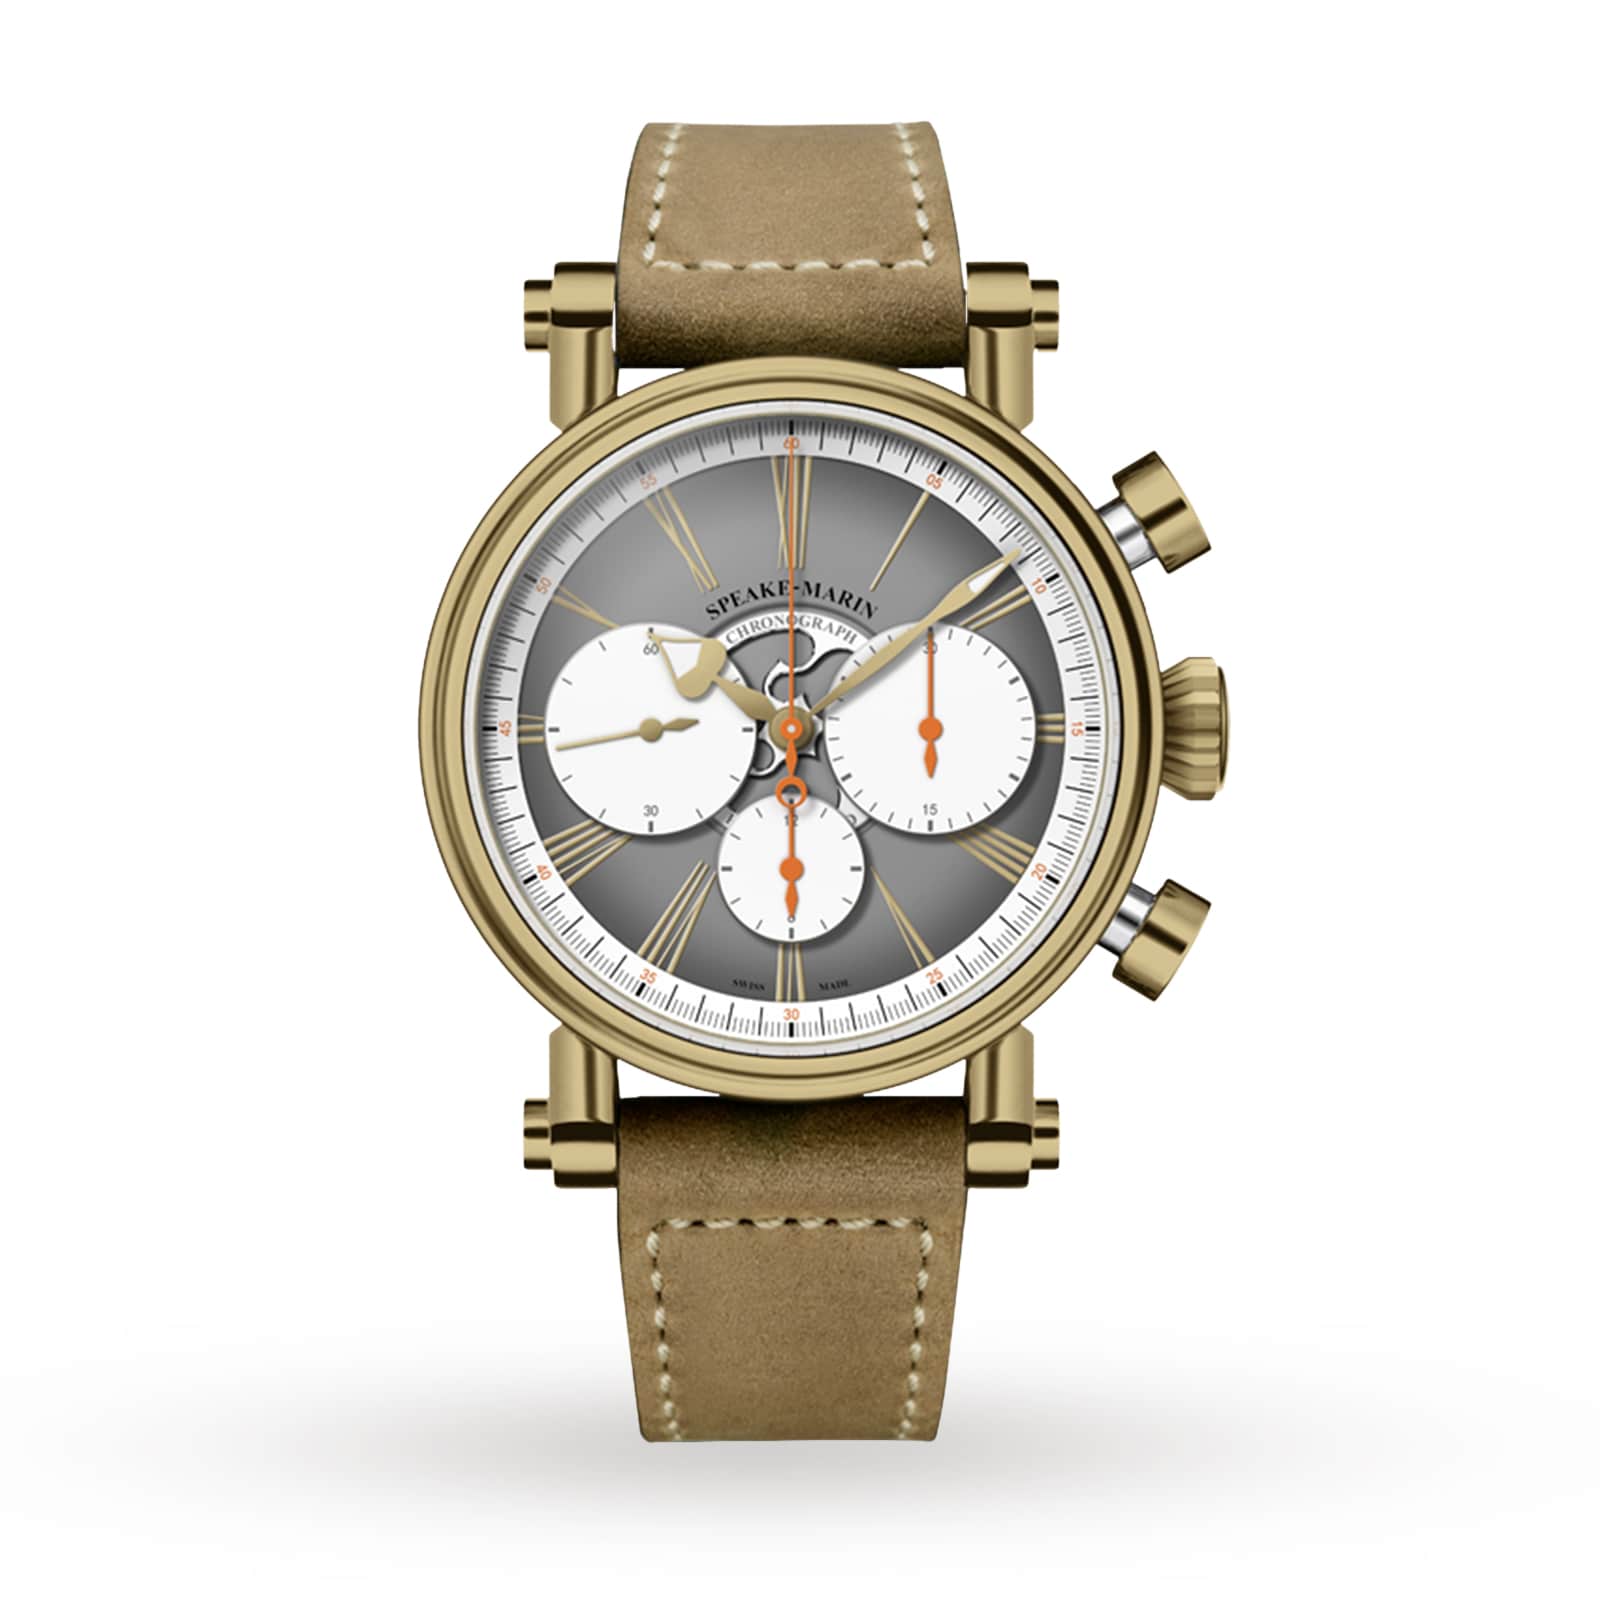 London US Watches | Speake-Marin Haute Bronze Horlogerie Switzerland Of 42mm 594208060 Chronograph